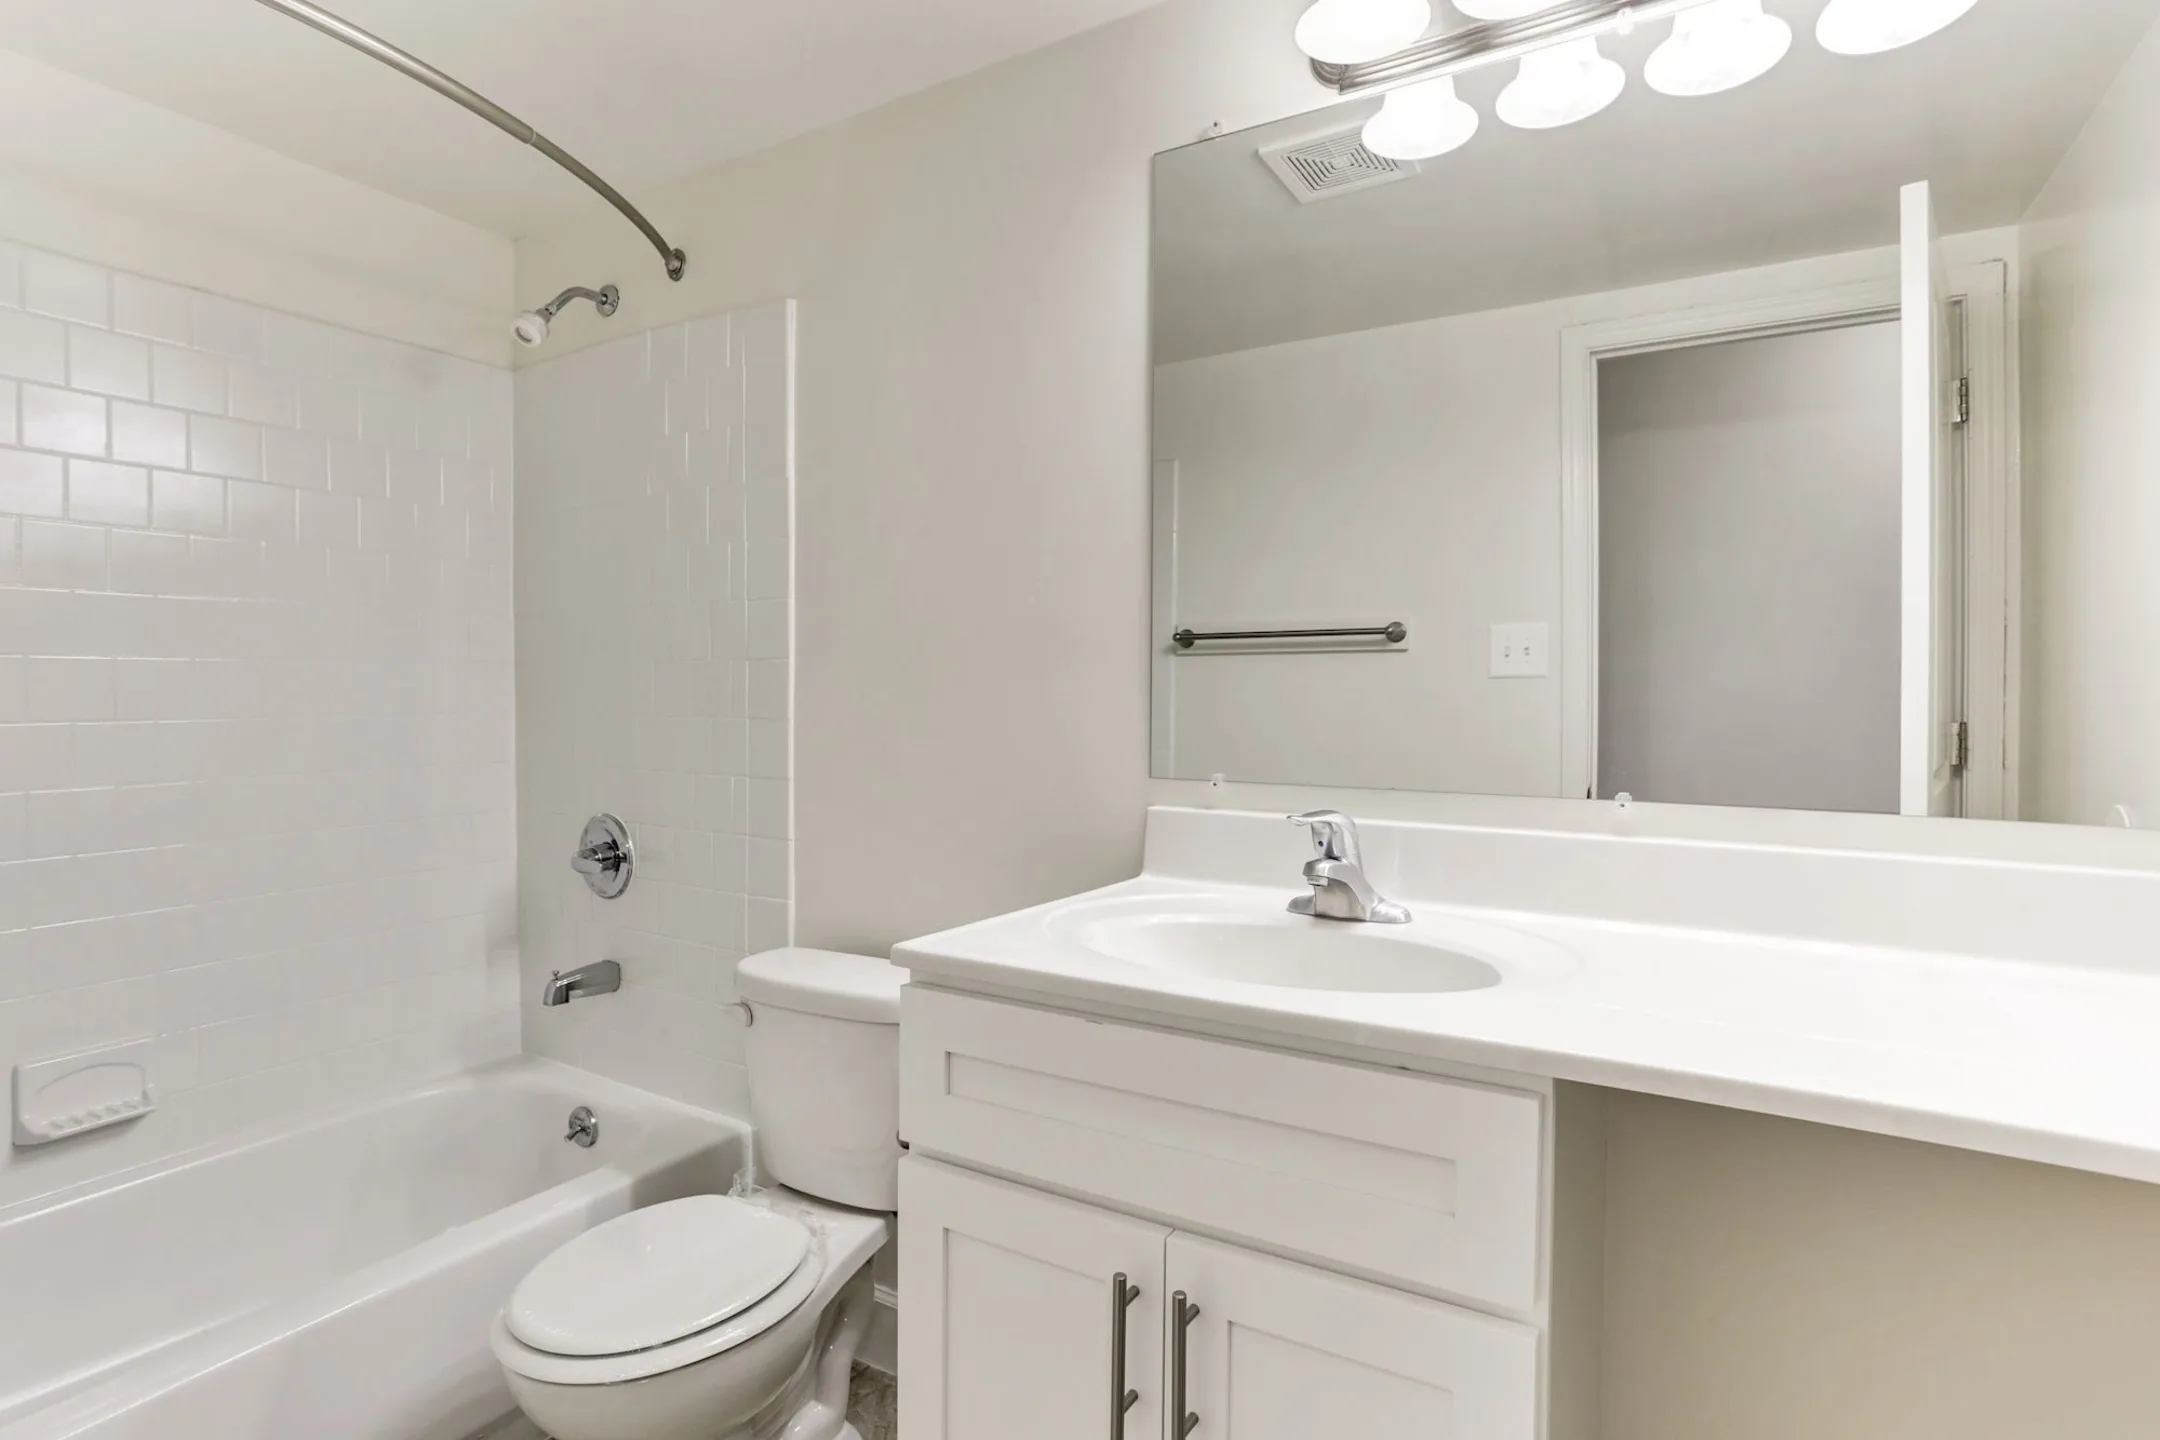 Bathroom - Satyr Hill Apartments - Parkville, MD